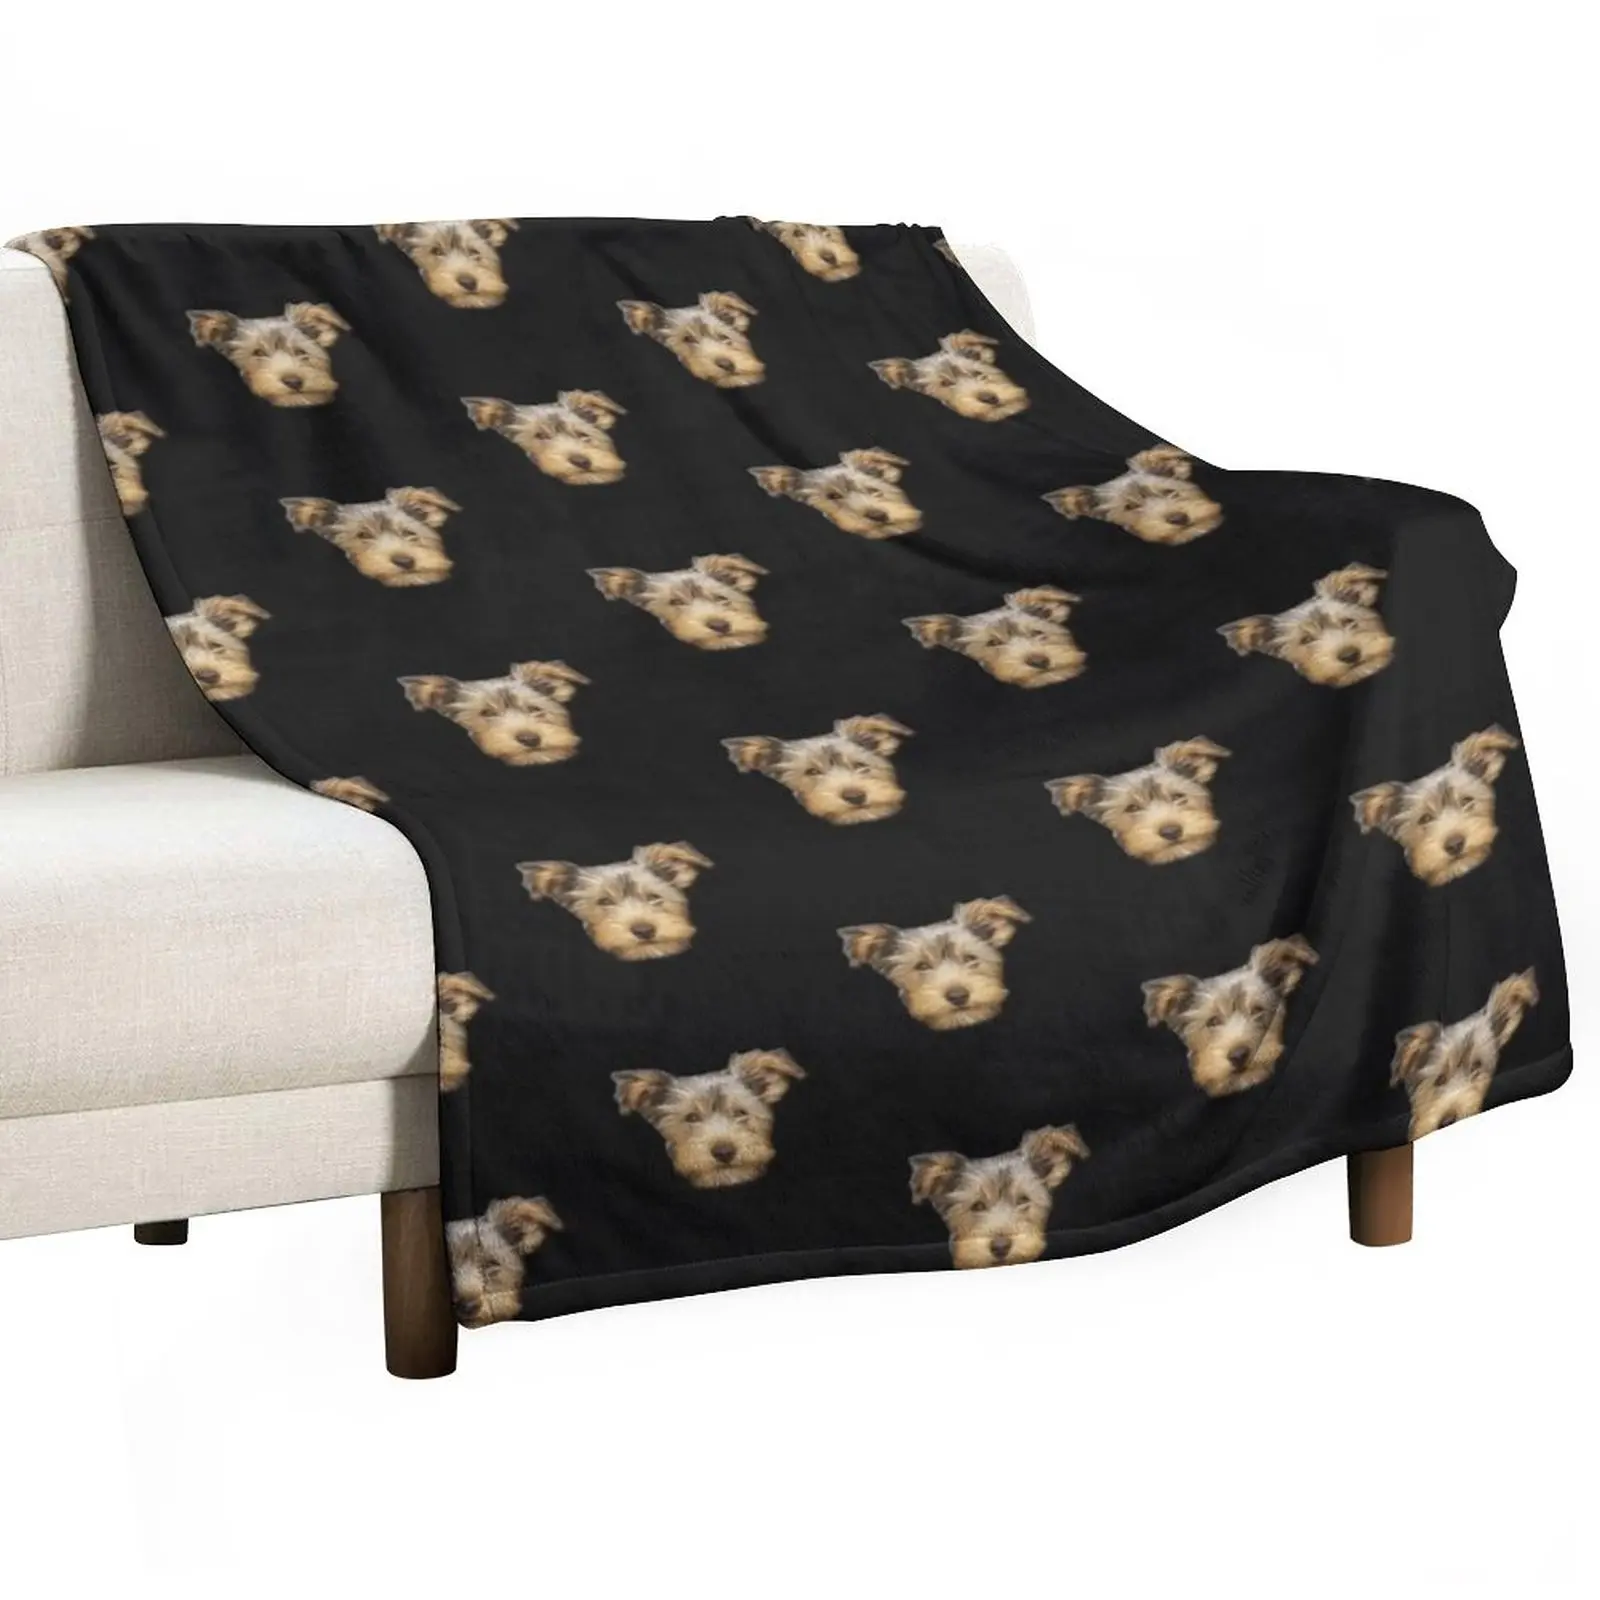 

yorkshire terrier Throw Blanket Flannels Blanket Bed covers Sleeping Bag Blanket